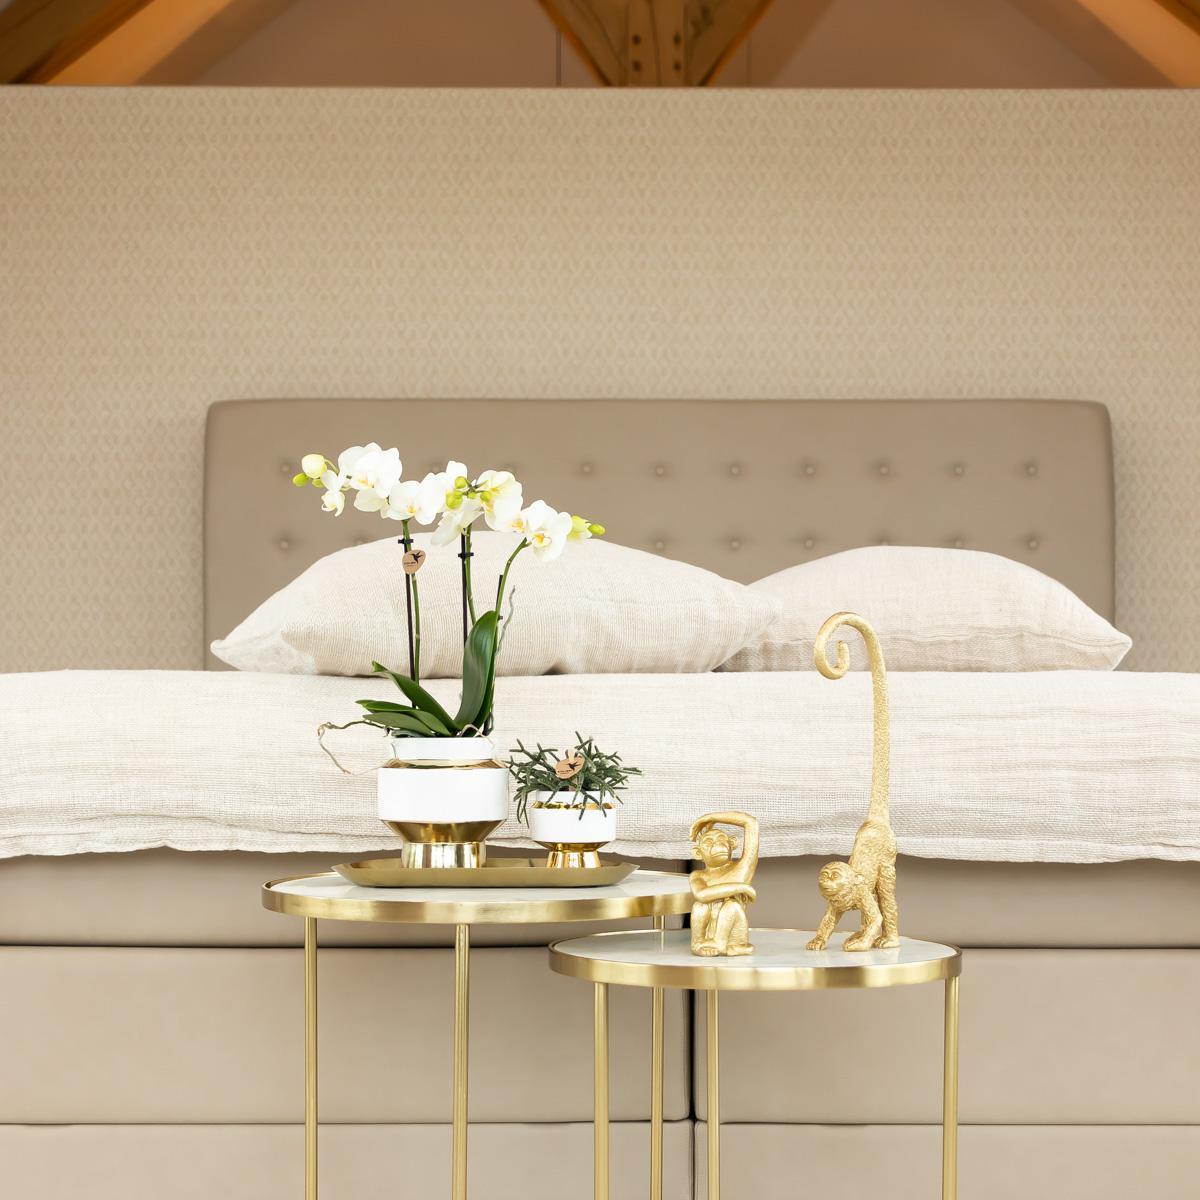 Kolibri Home | Le Chic bloempot - Witte keramieken sierpot met gouden details - potmaat Ø6cm